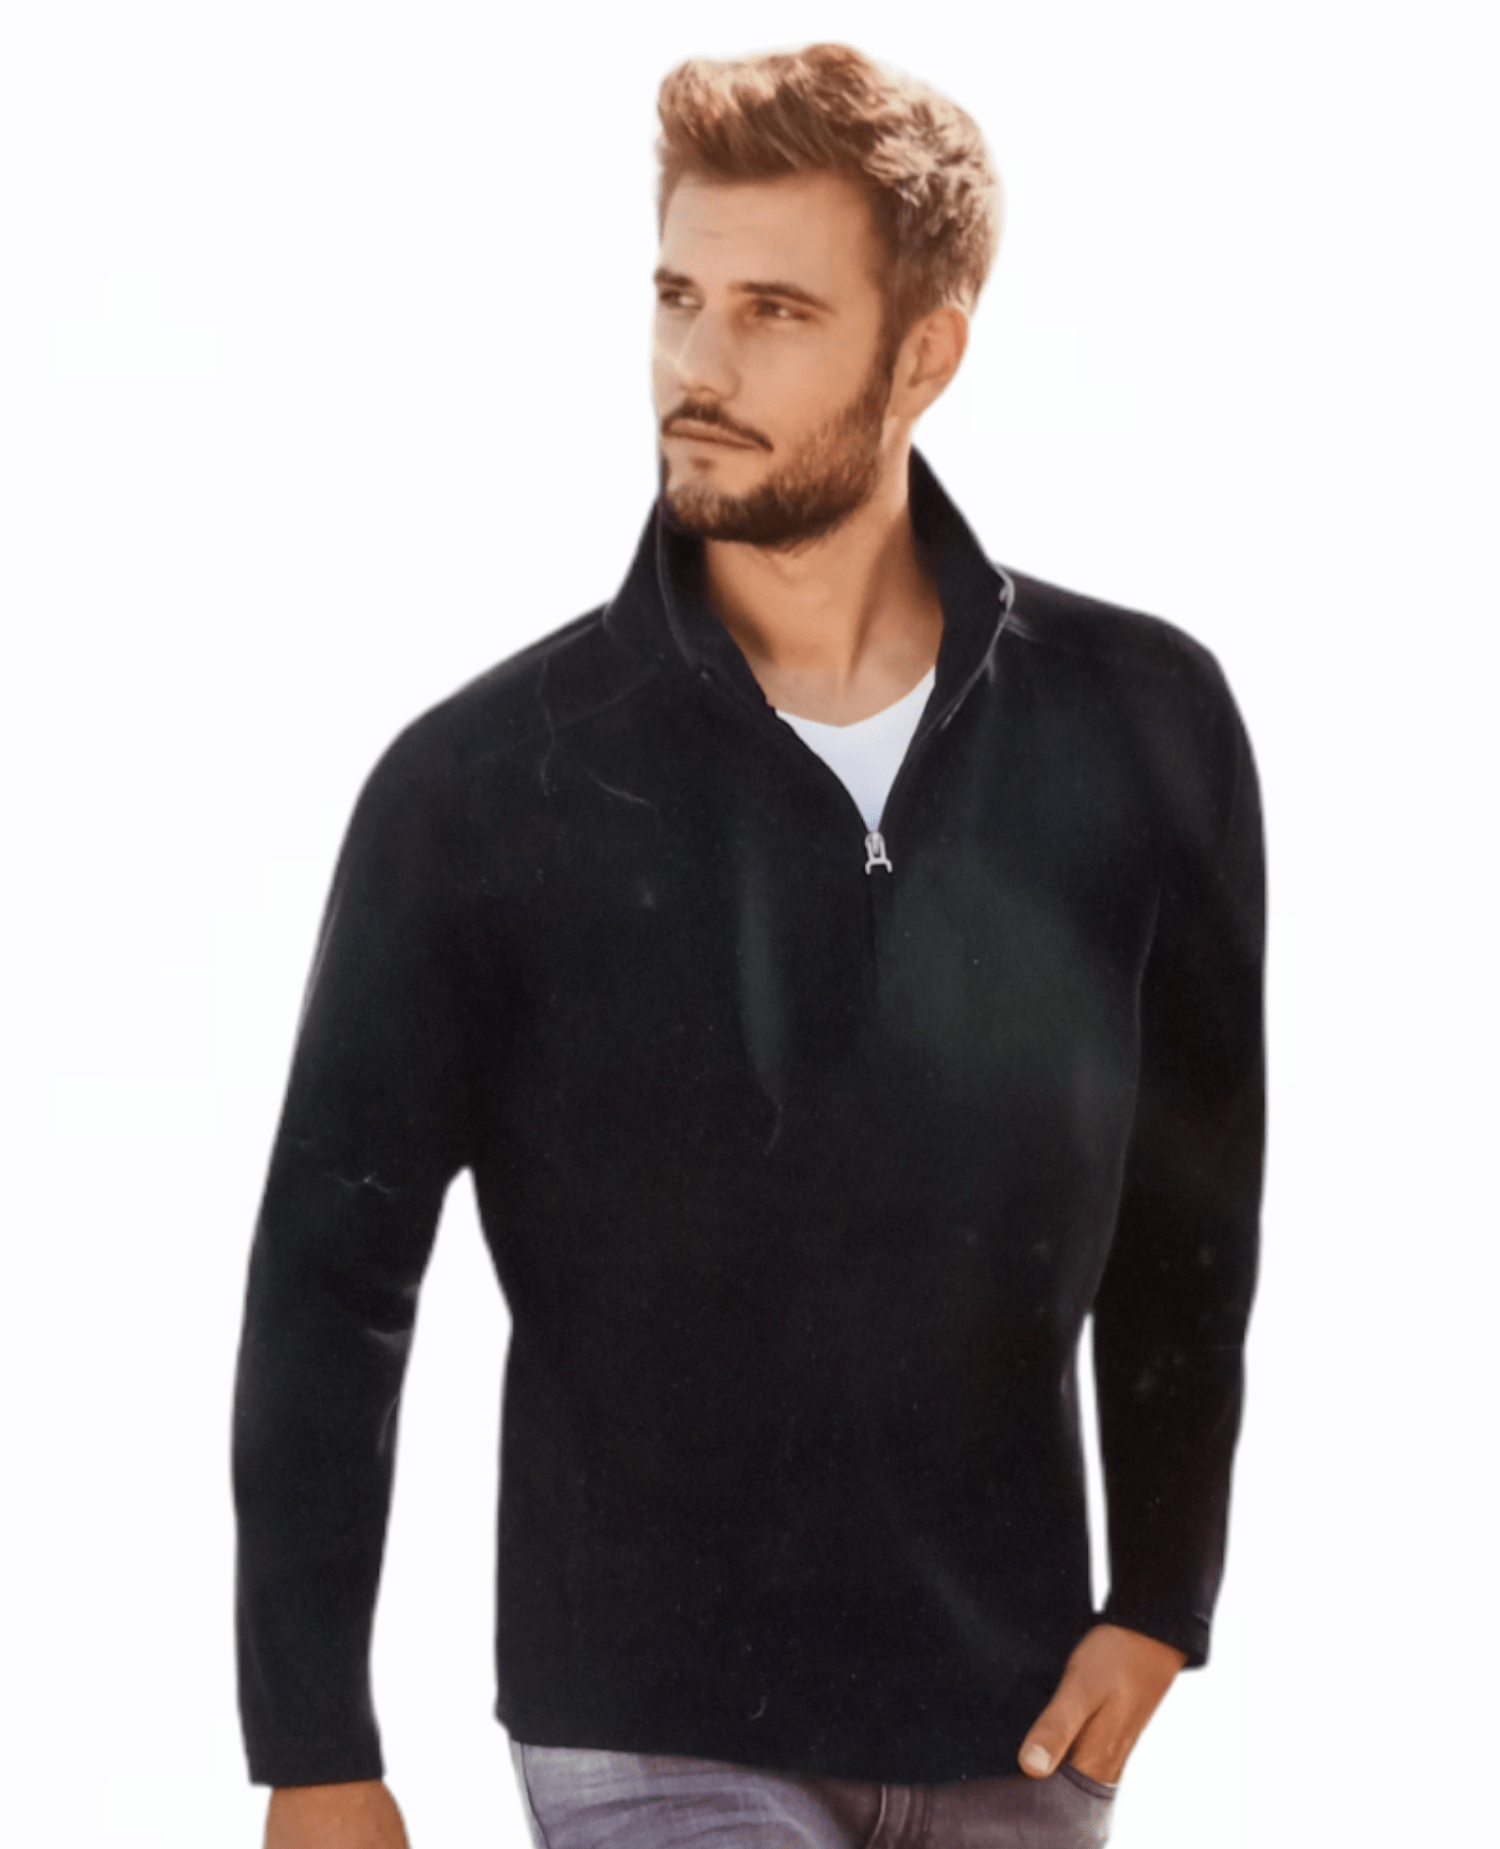 ElOutlet Men Sweatshirt 2XL (64cm) FleeceShirt Half-Zipper Collar - Black